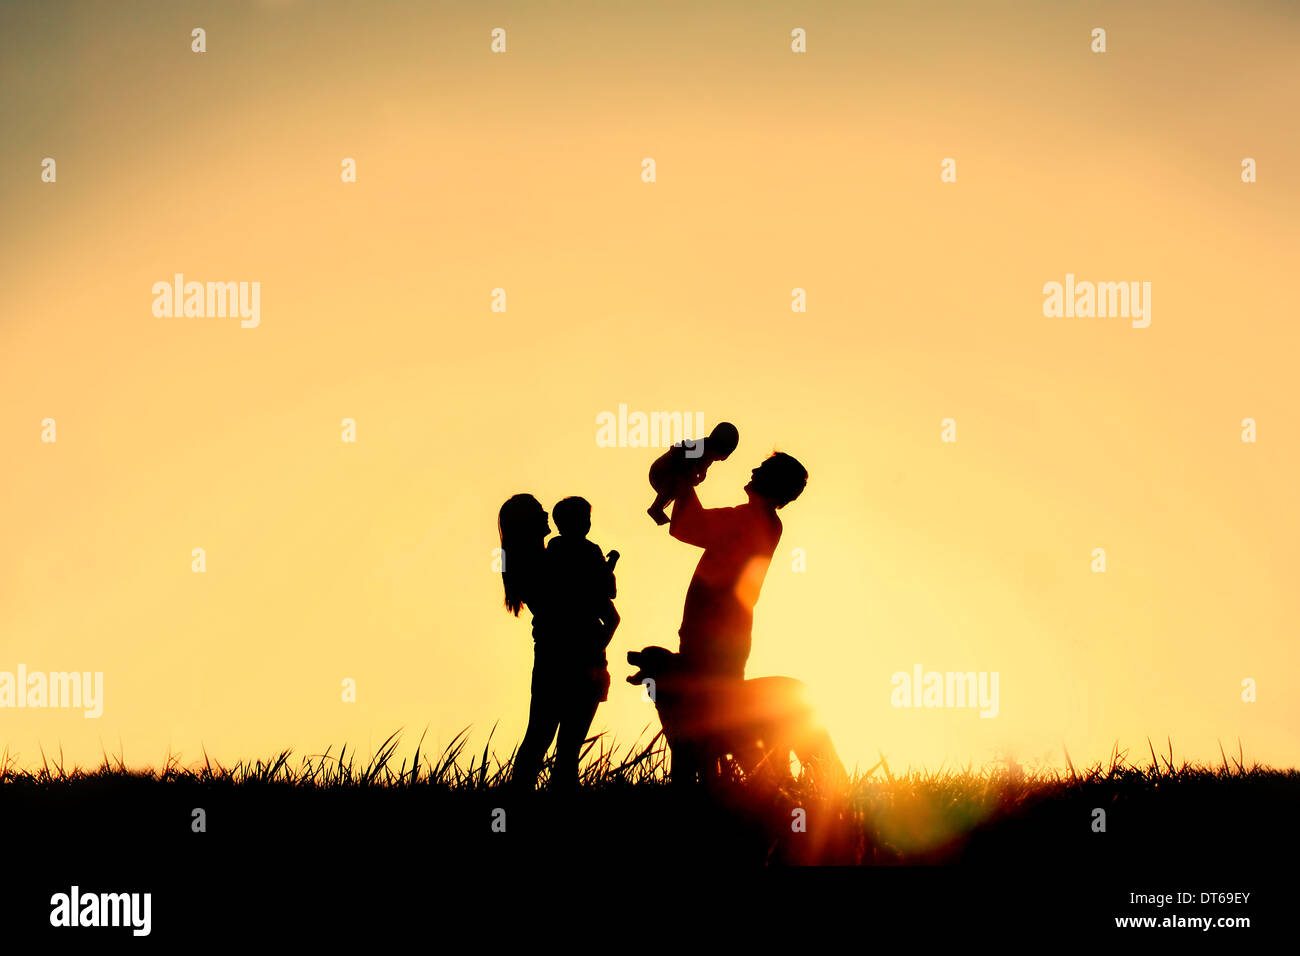 La silhouette d'une famille heureuse de quatre personnes, le père, la mère, un bébé et enfant, et de leur chien en face d'un ciel temporaire, Banque D'Images